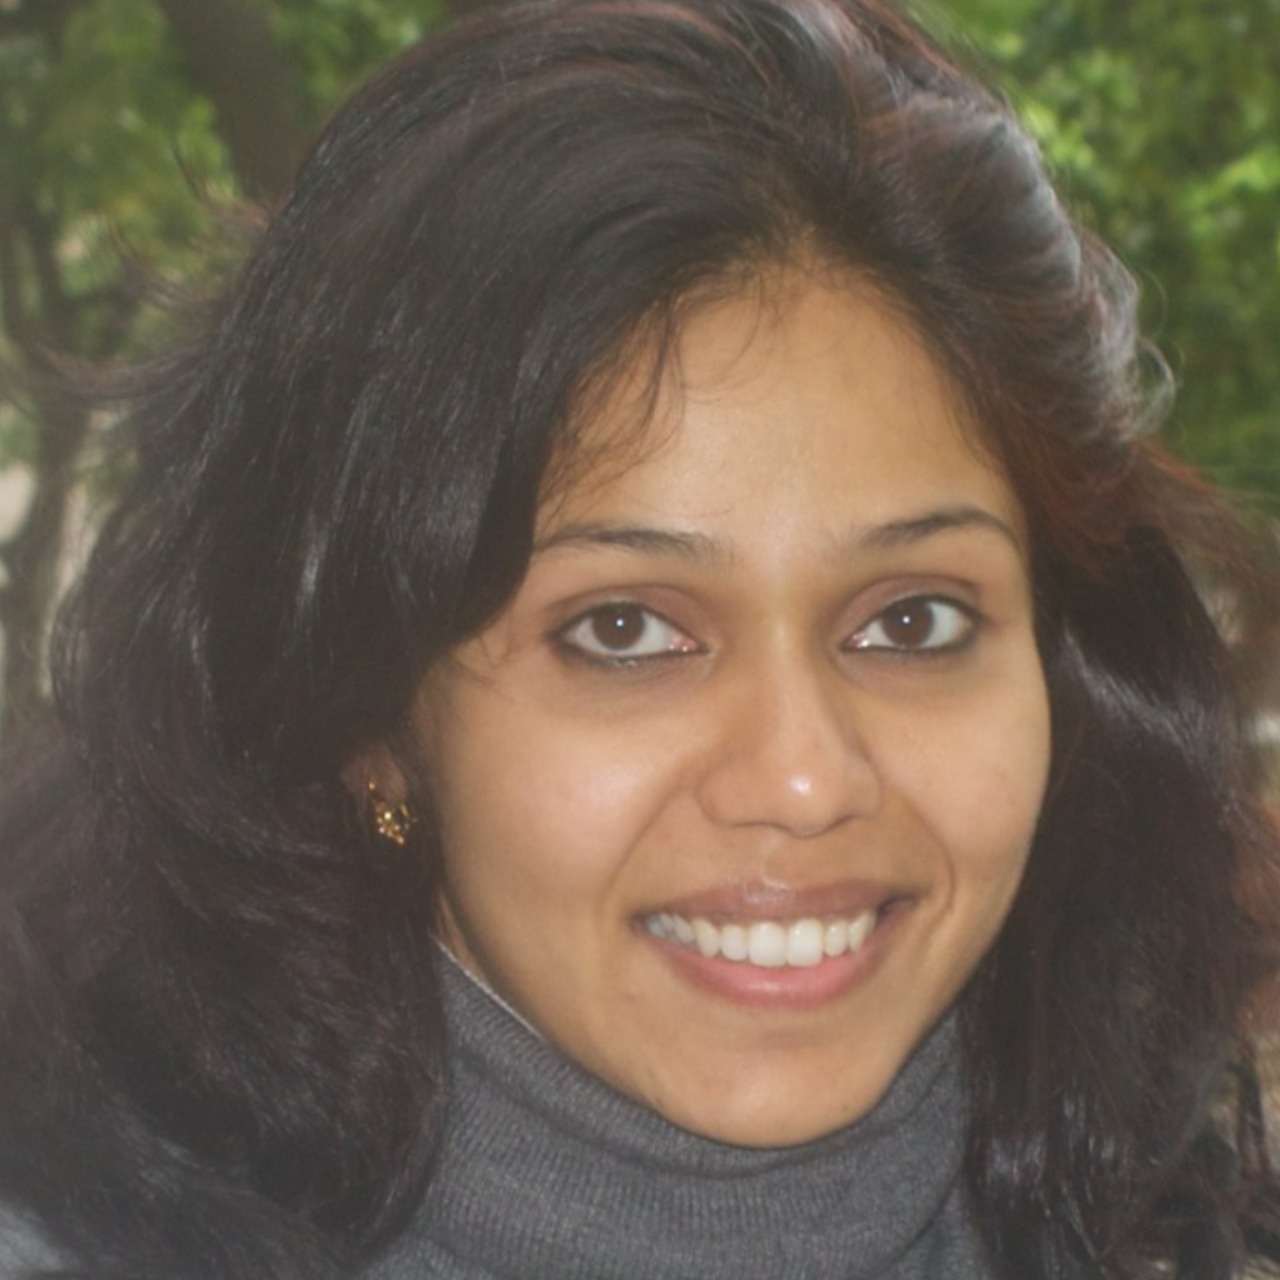 Radhika Shukla